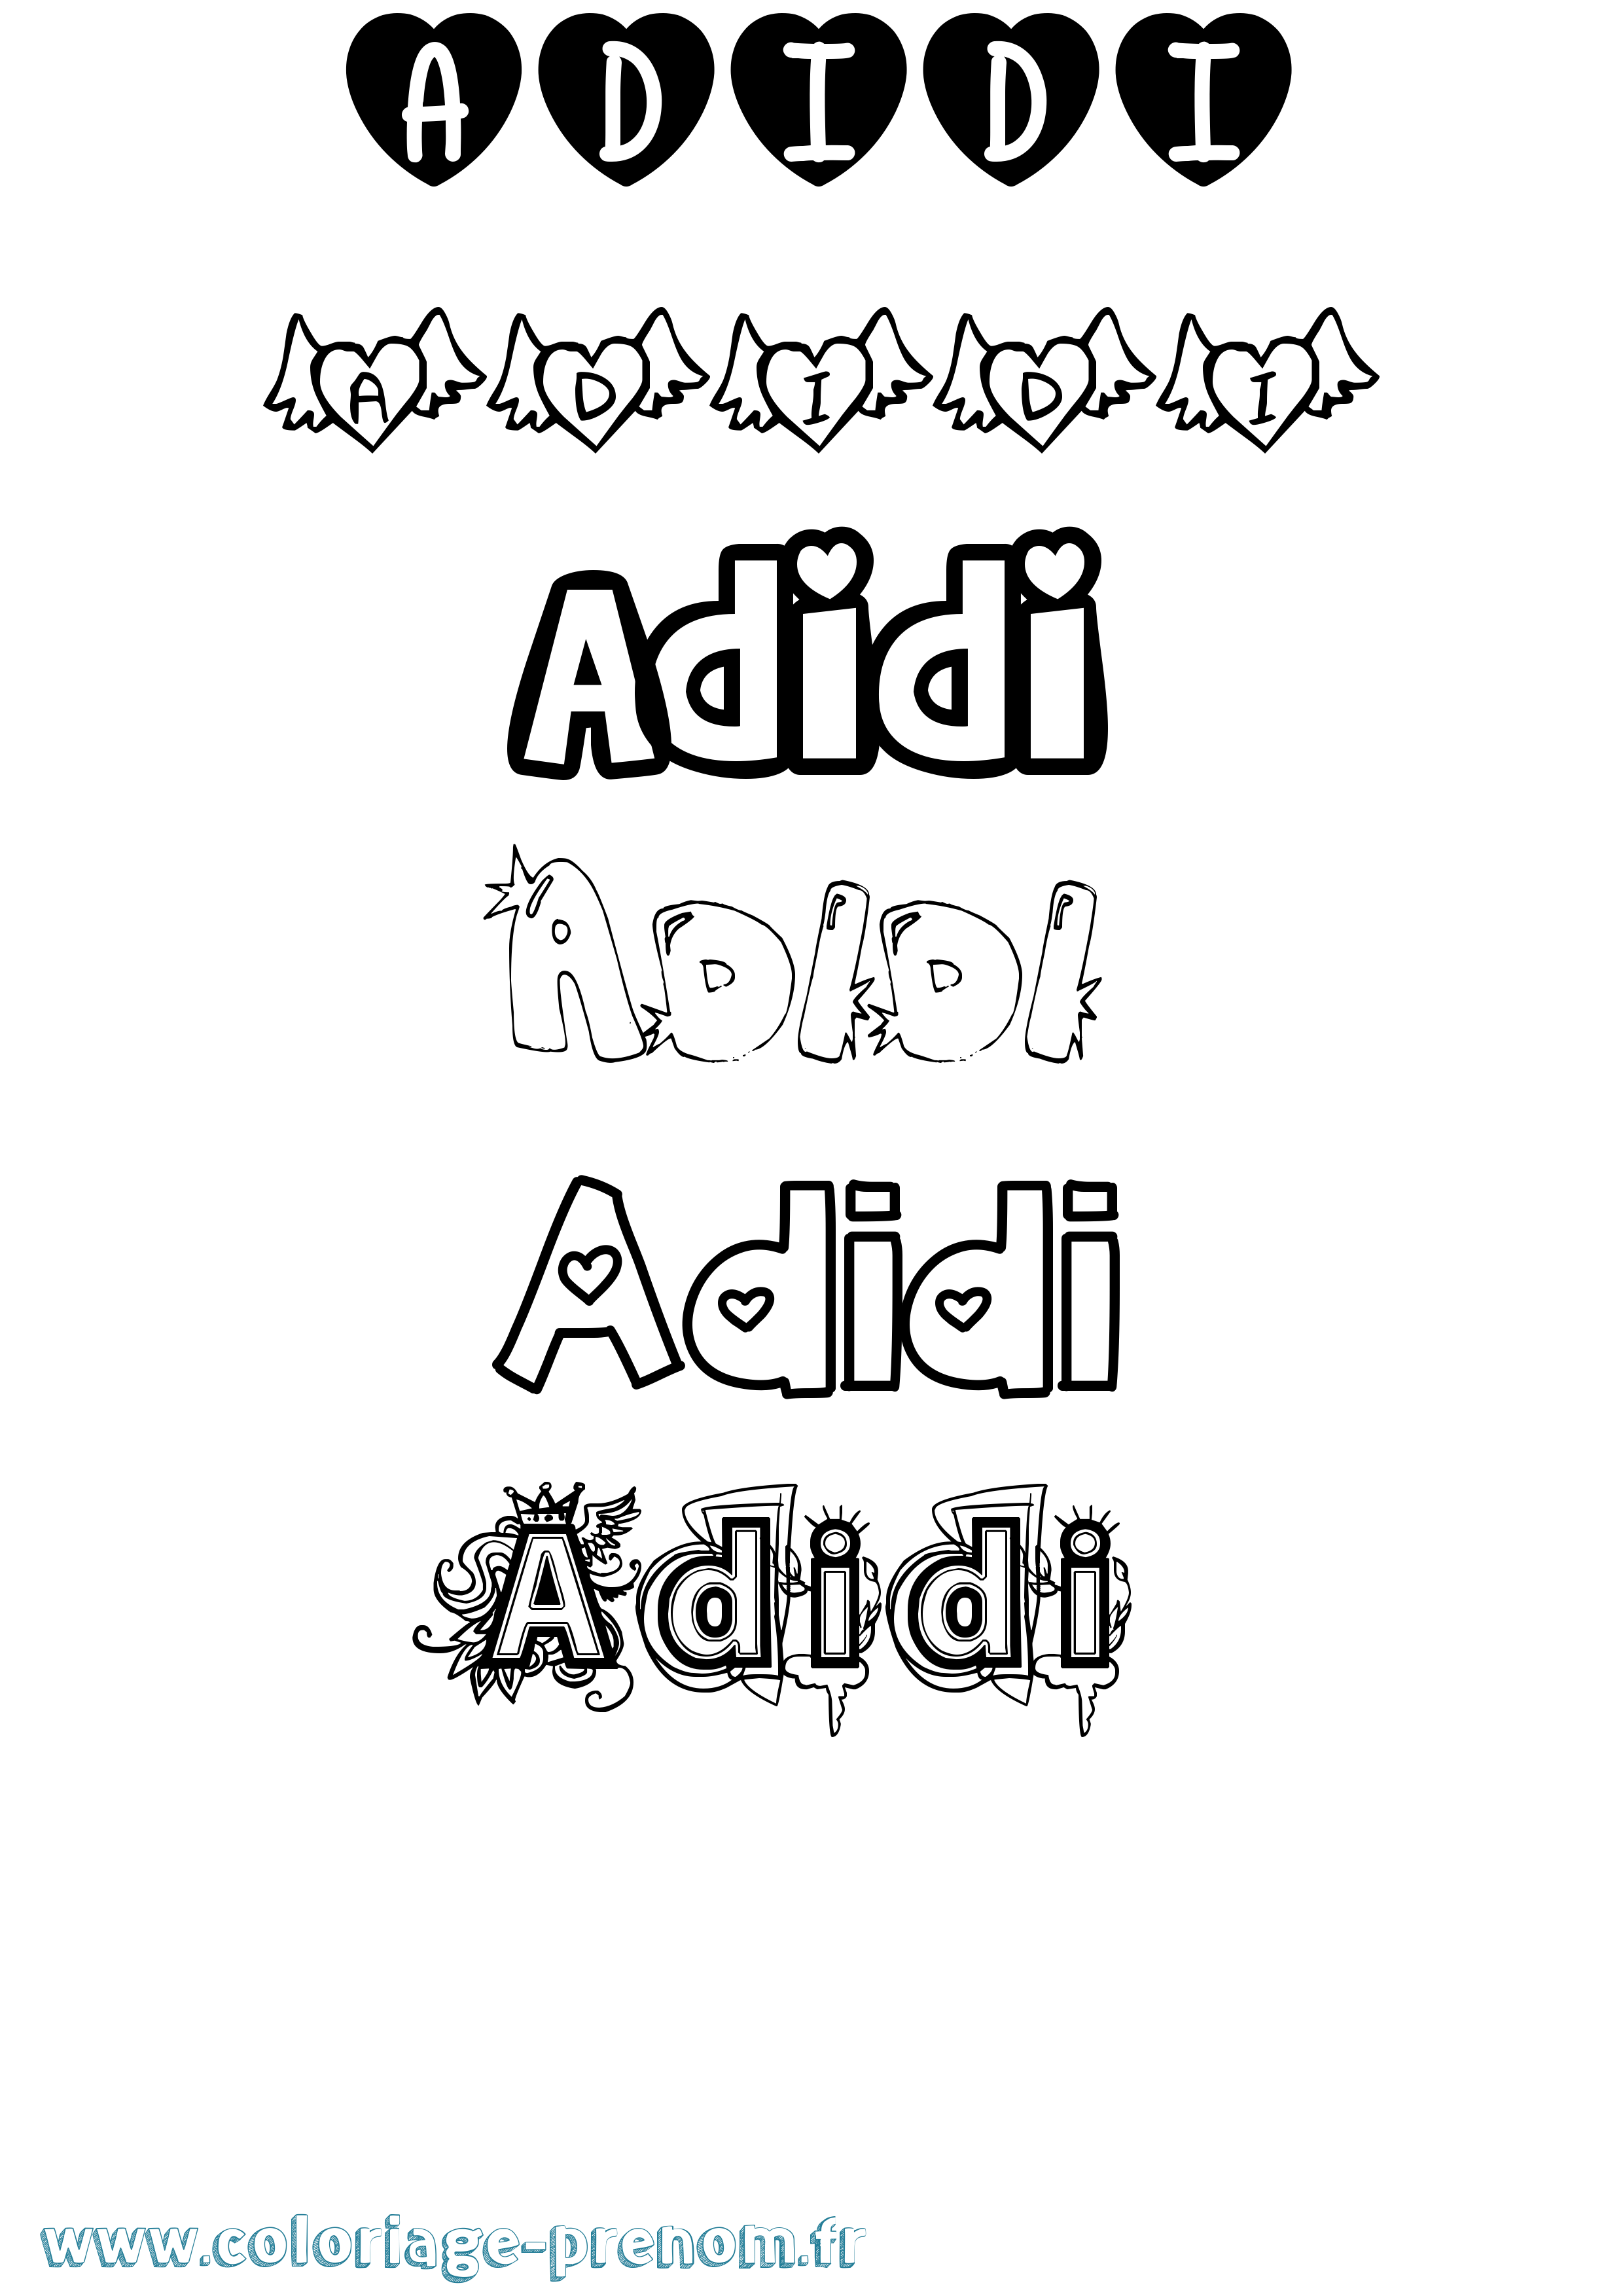 Coloriage prénom Adidi Girly